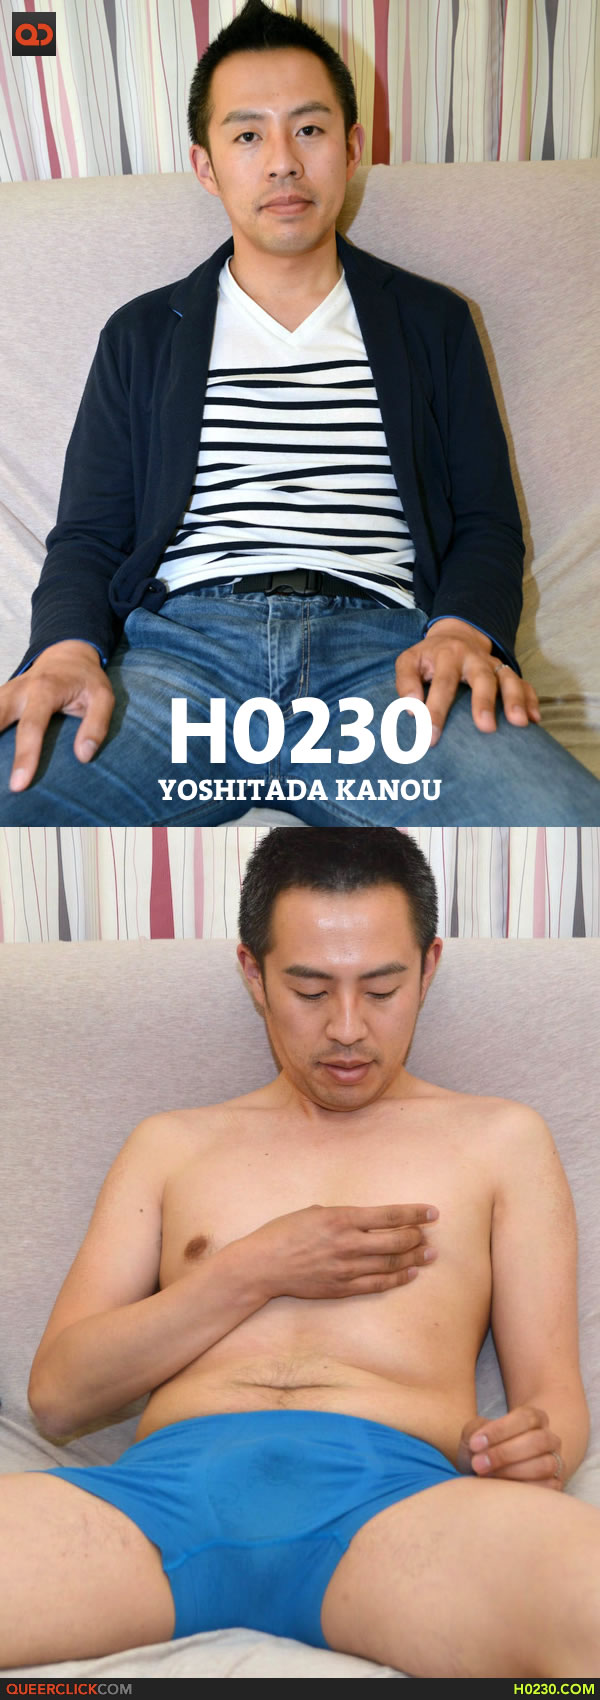 h0230-yoshitada-kanou-1